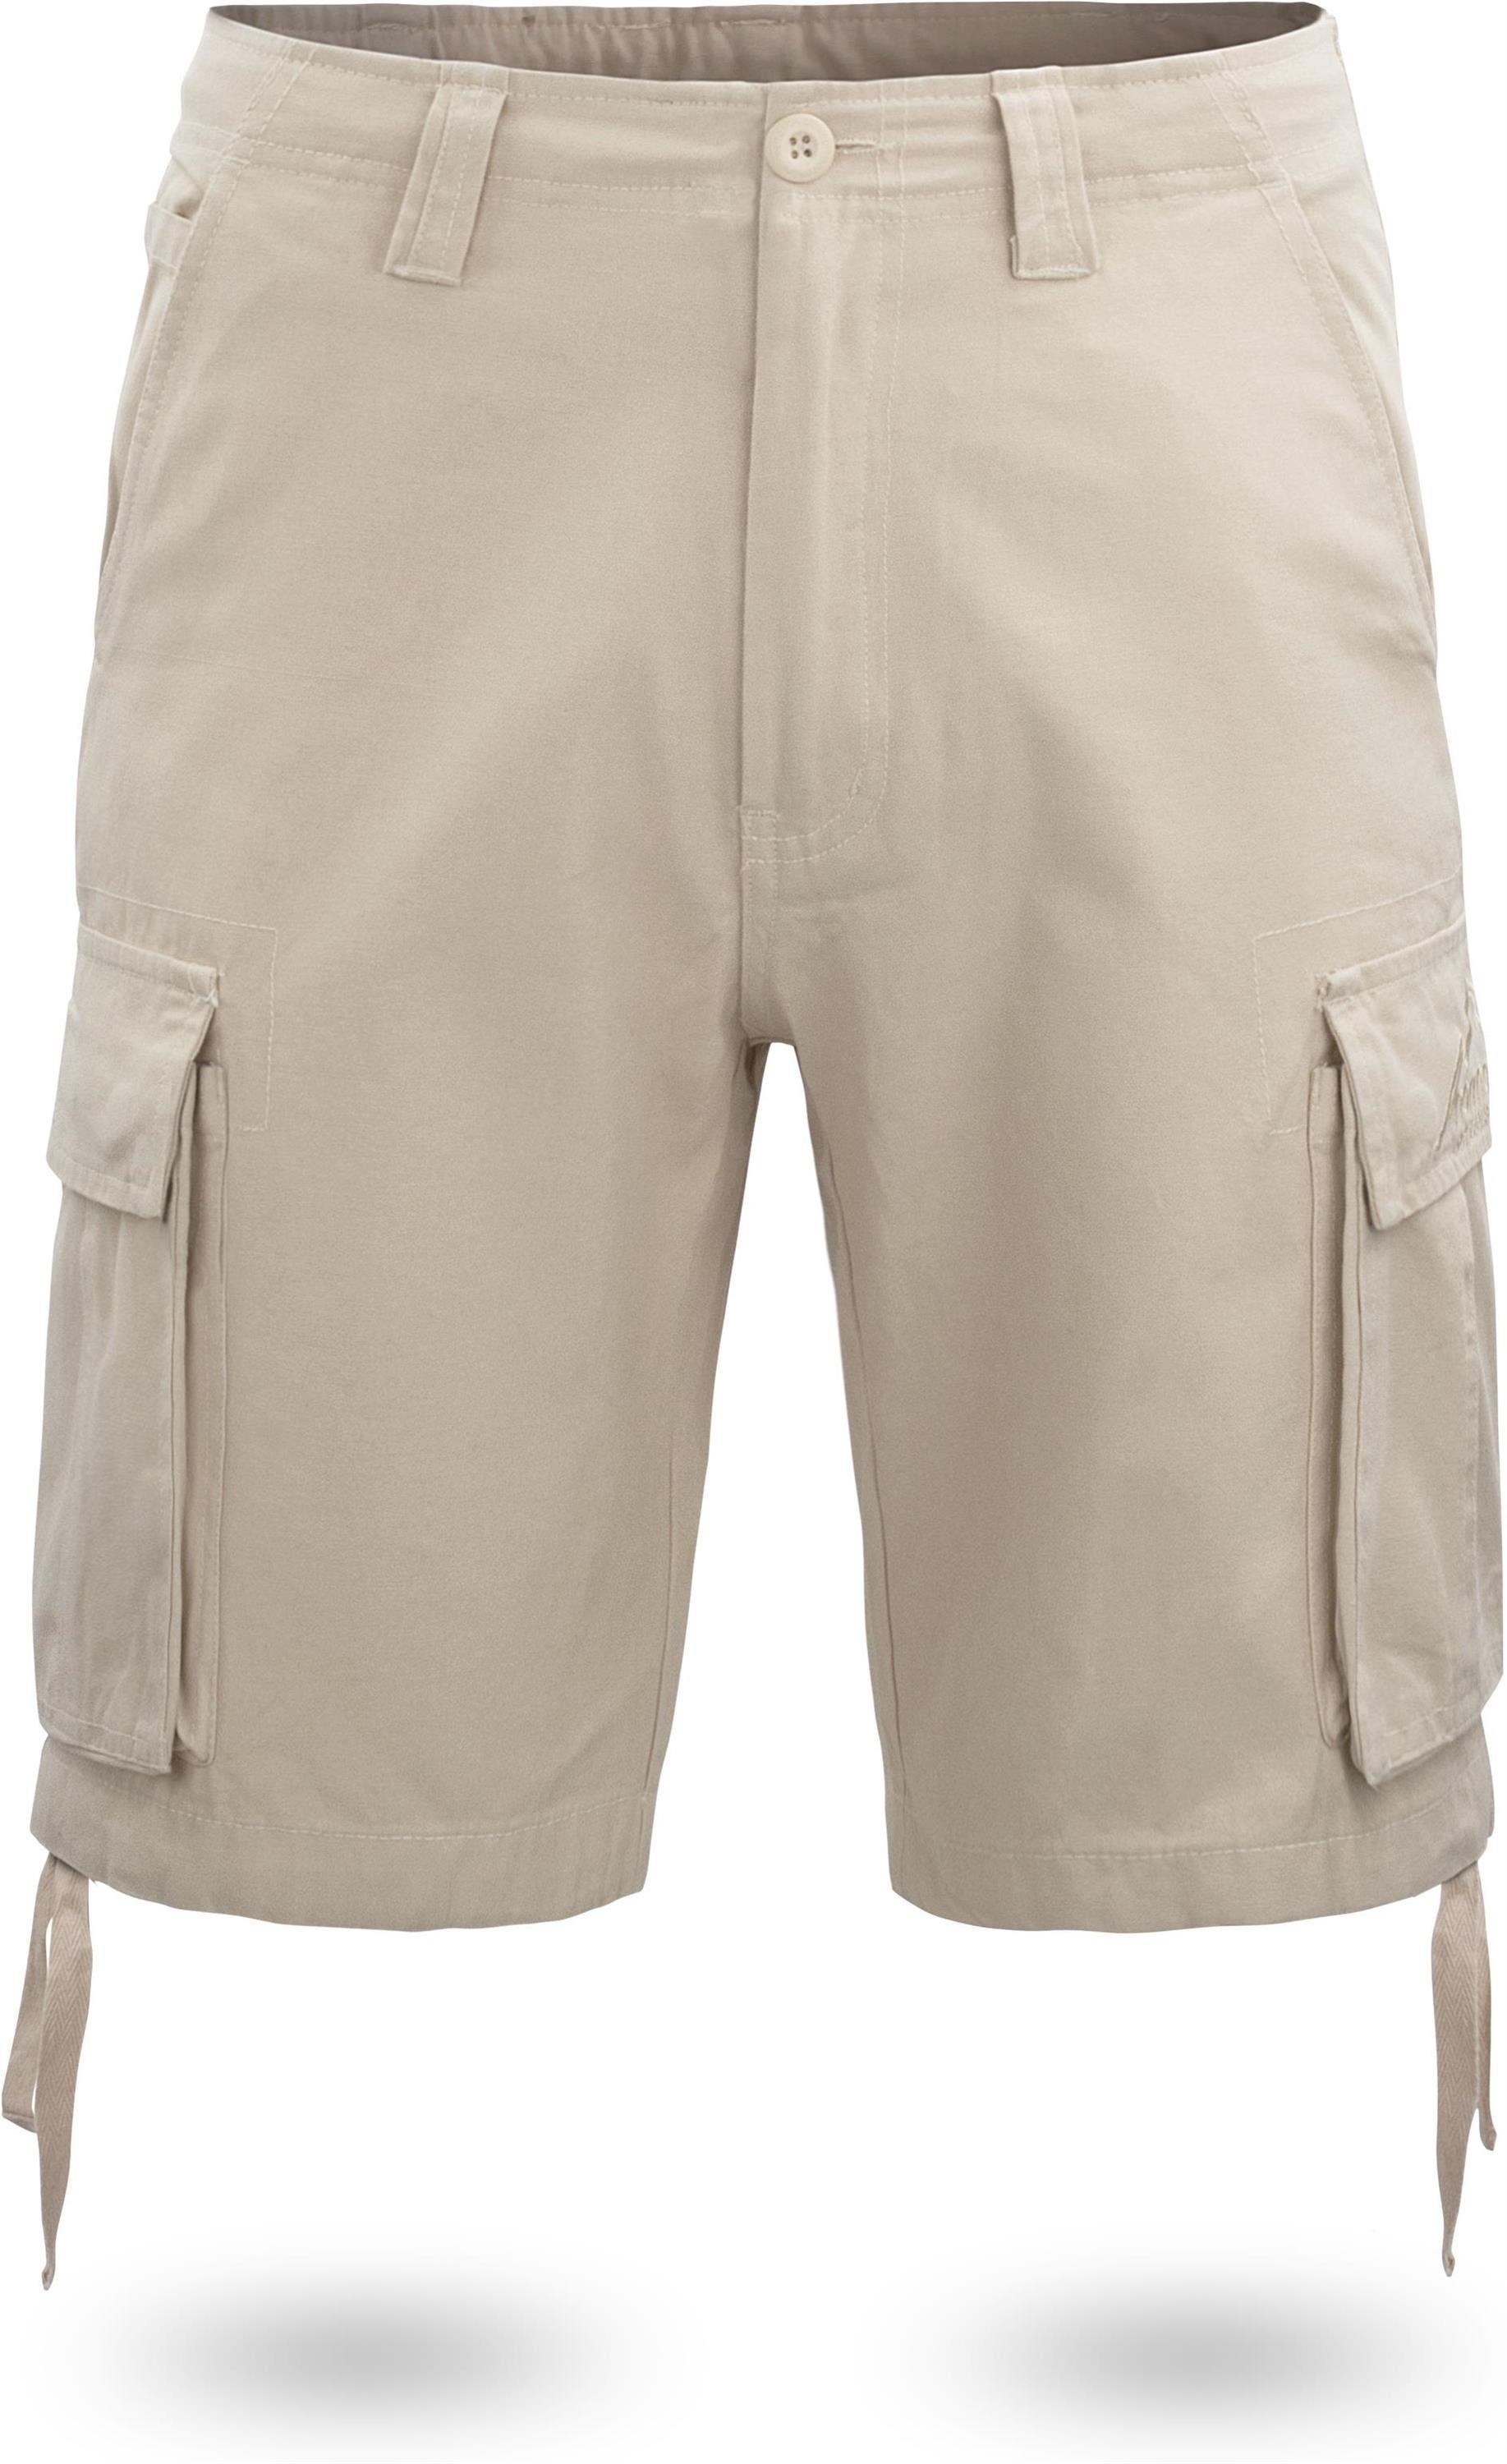 Shorts aus Kalahari Cargotaschen Vintage kurze Khaki Bio-Baumwolle Bermudas Shorts mit Sommershorts Herren 100% normani